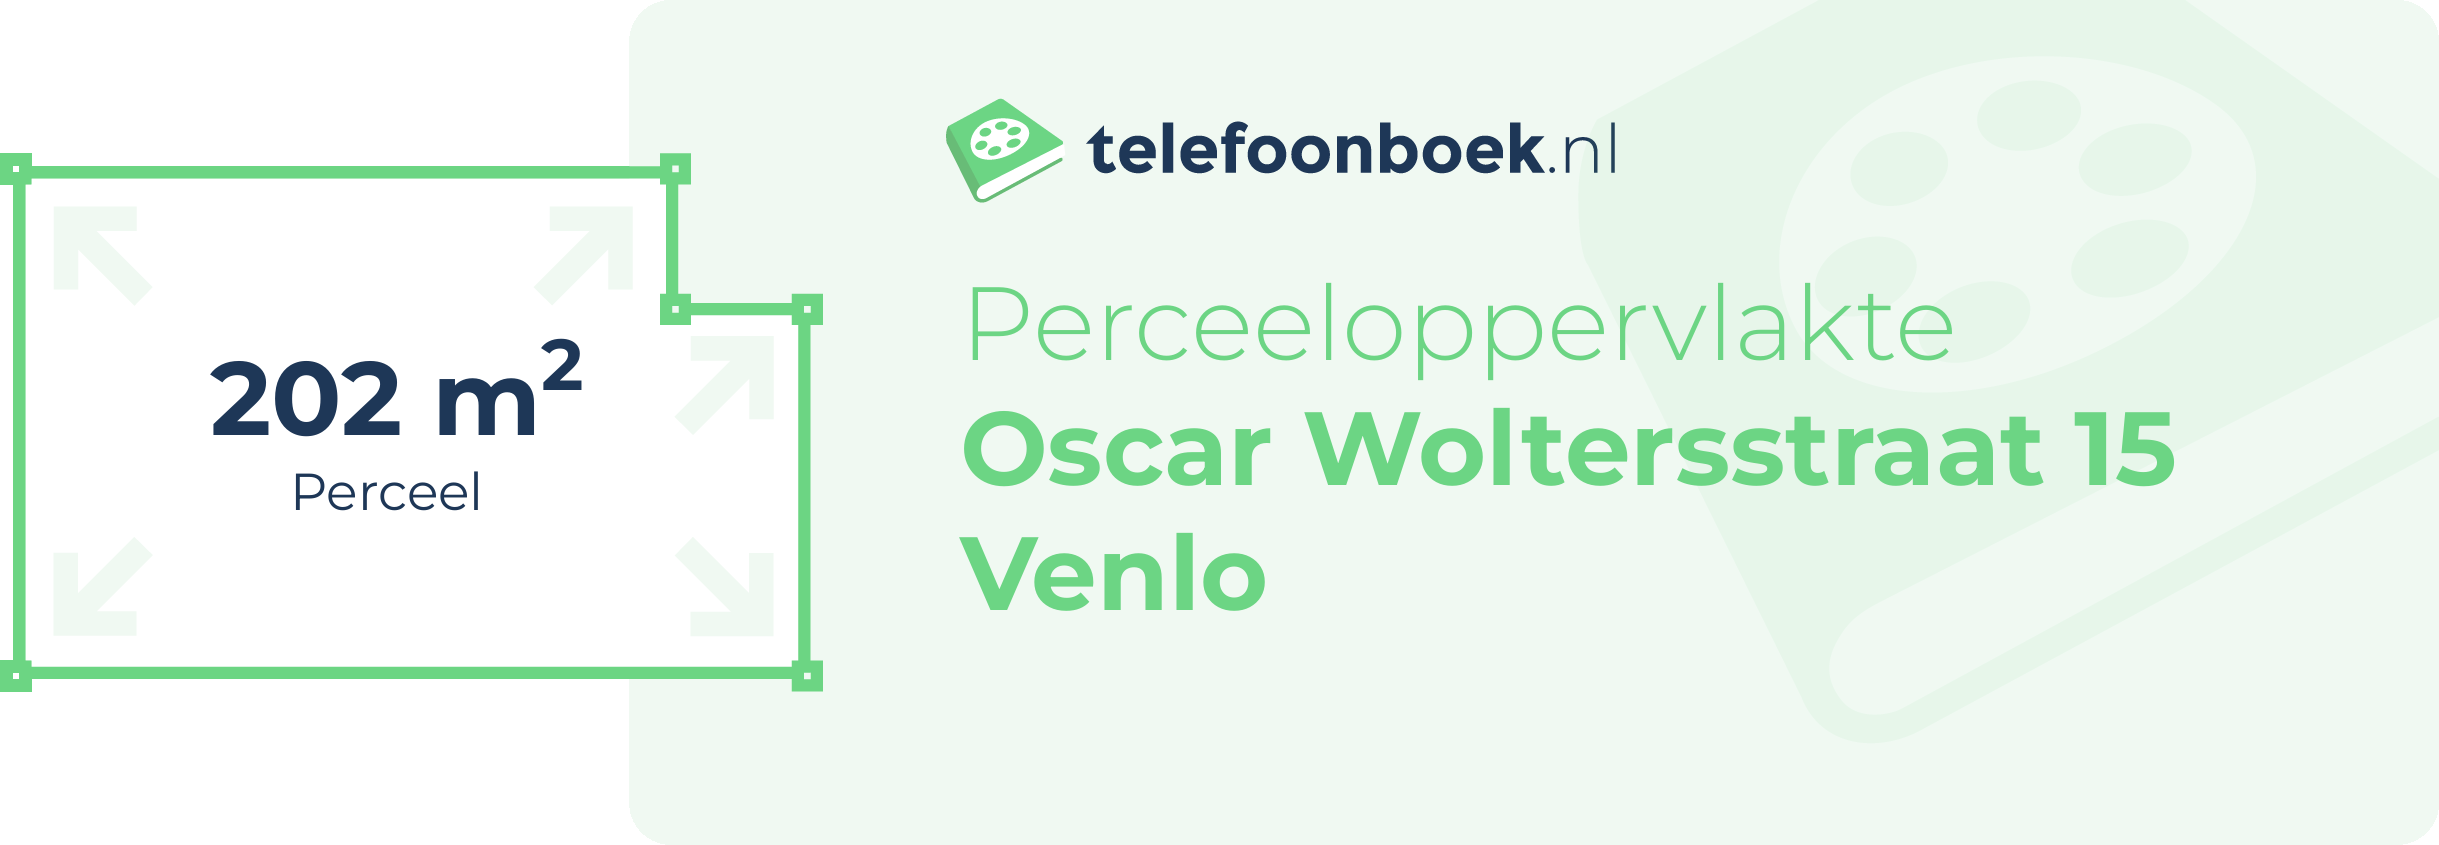 Perceeloppervlakte Oscar Woltersstraat 15 Venlo